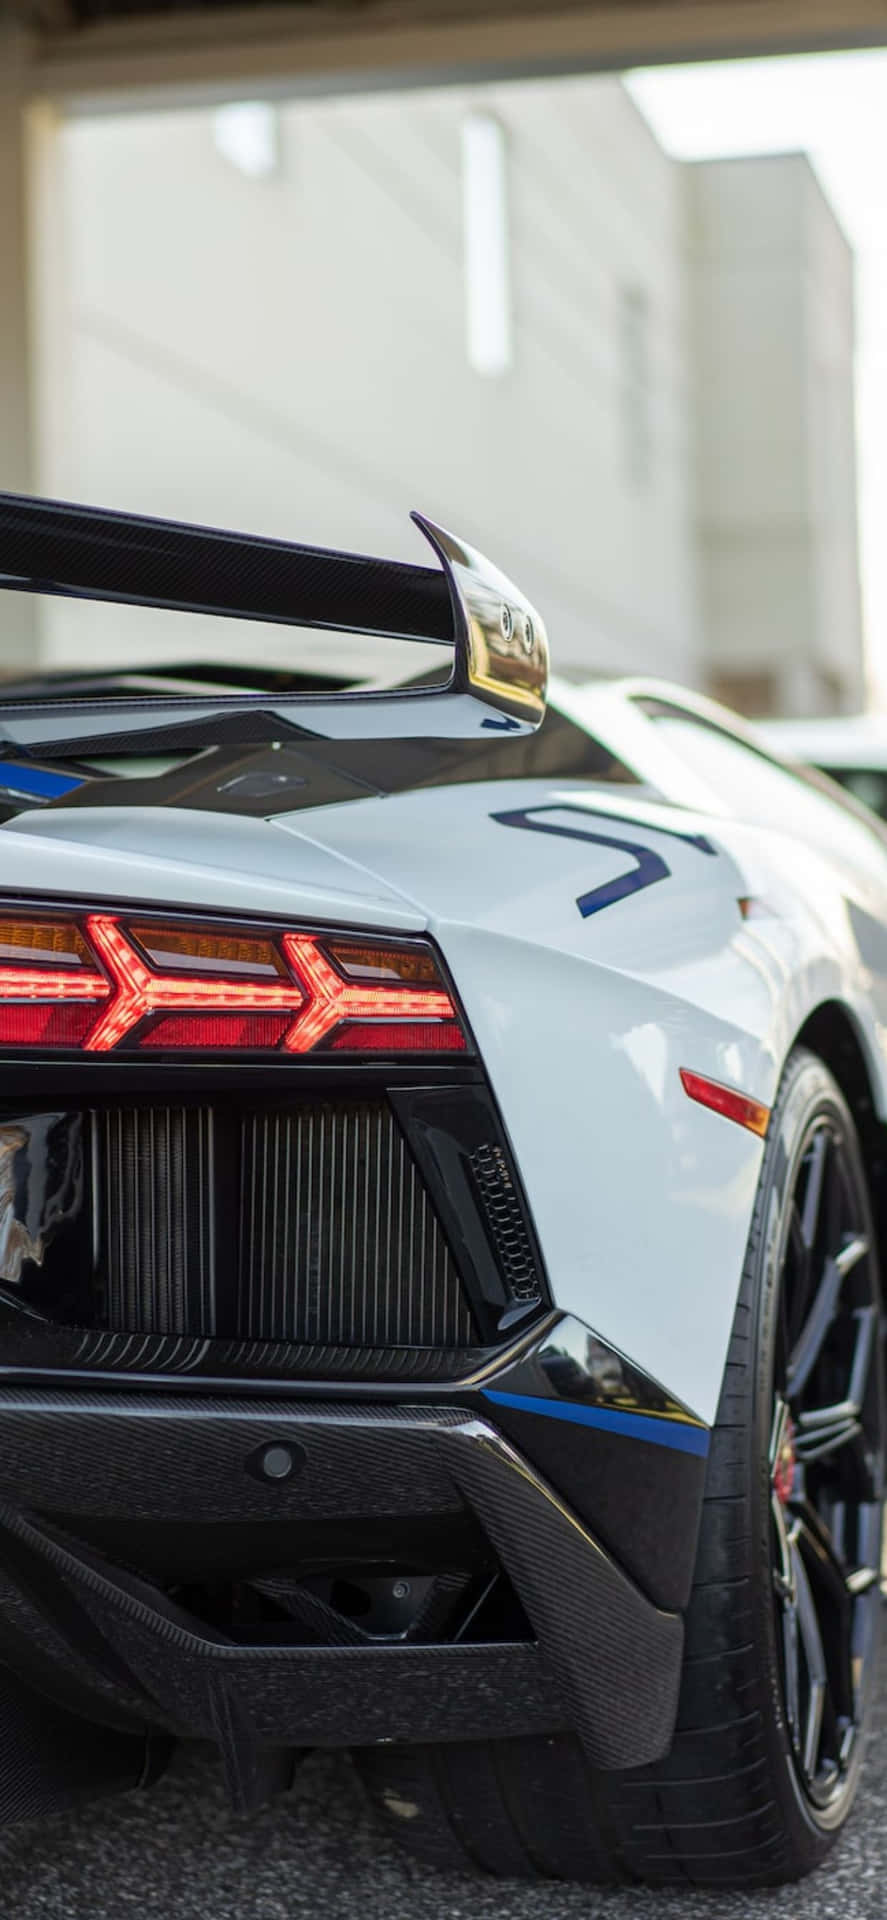 Iphonexs Max Lamborghini Vit Bakgrundsbild.